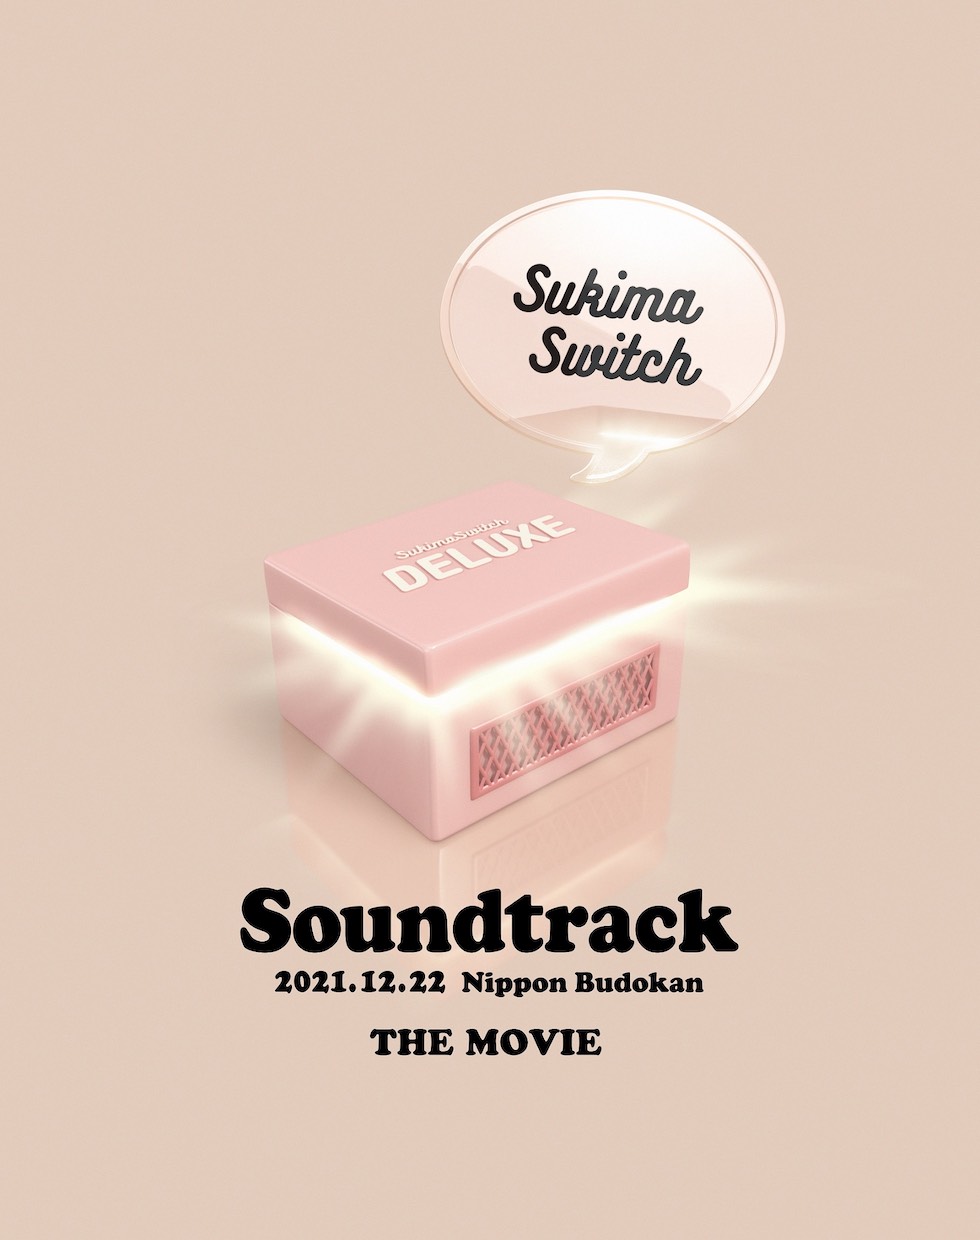 スキマスイッチ “Soundtrack”  THE MOVIE